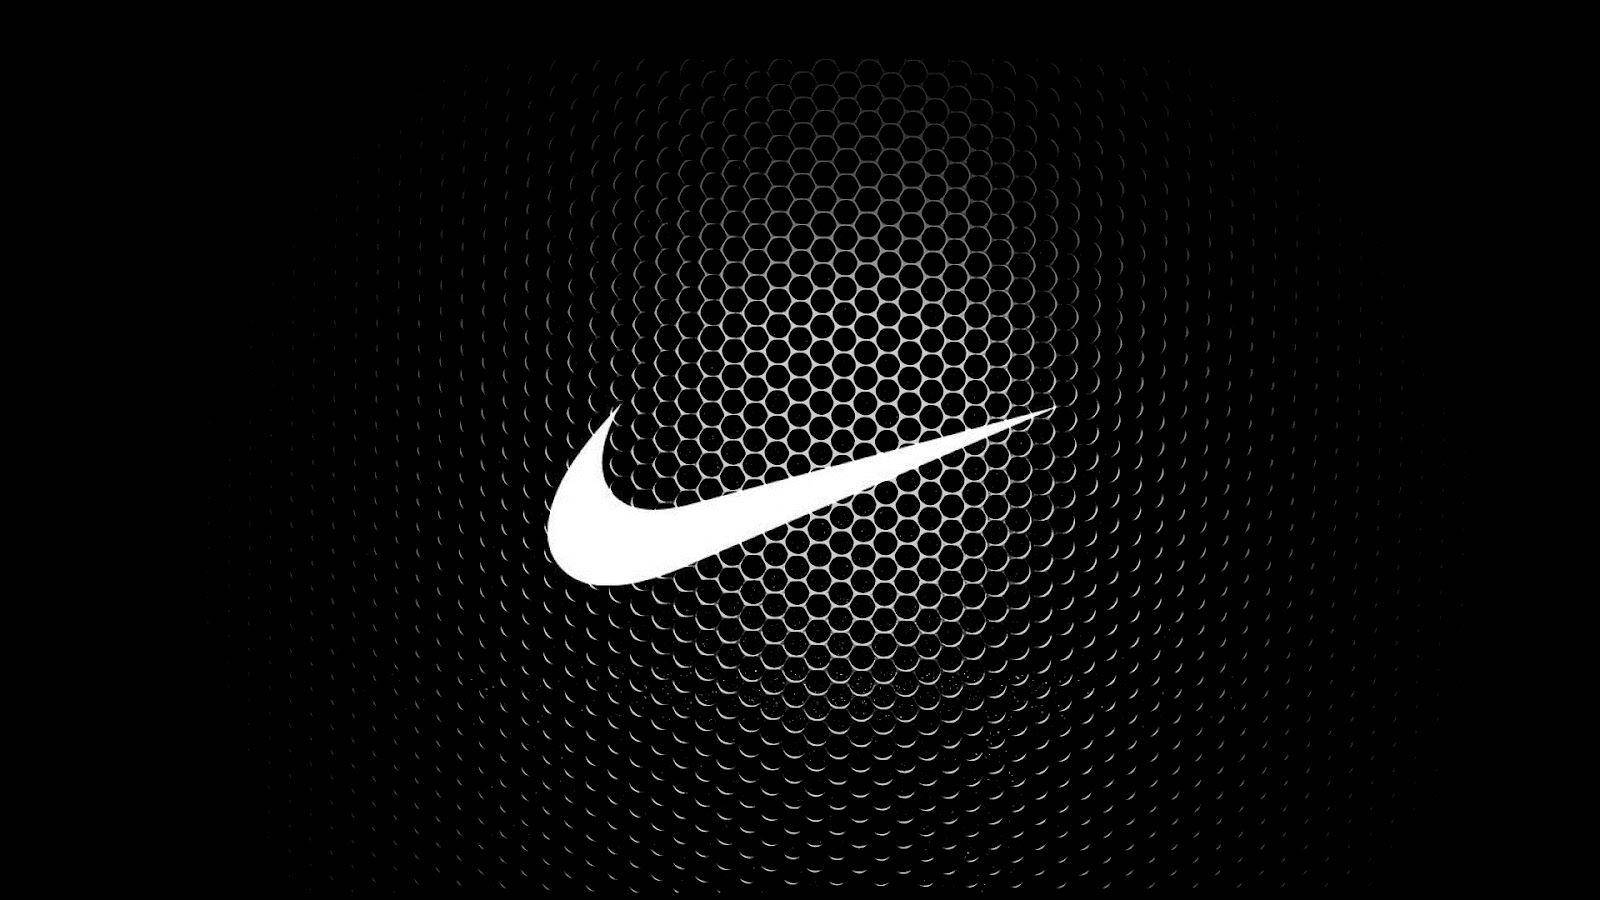 Black Nike Logo